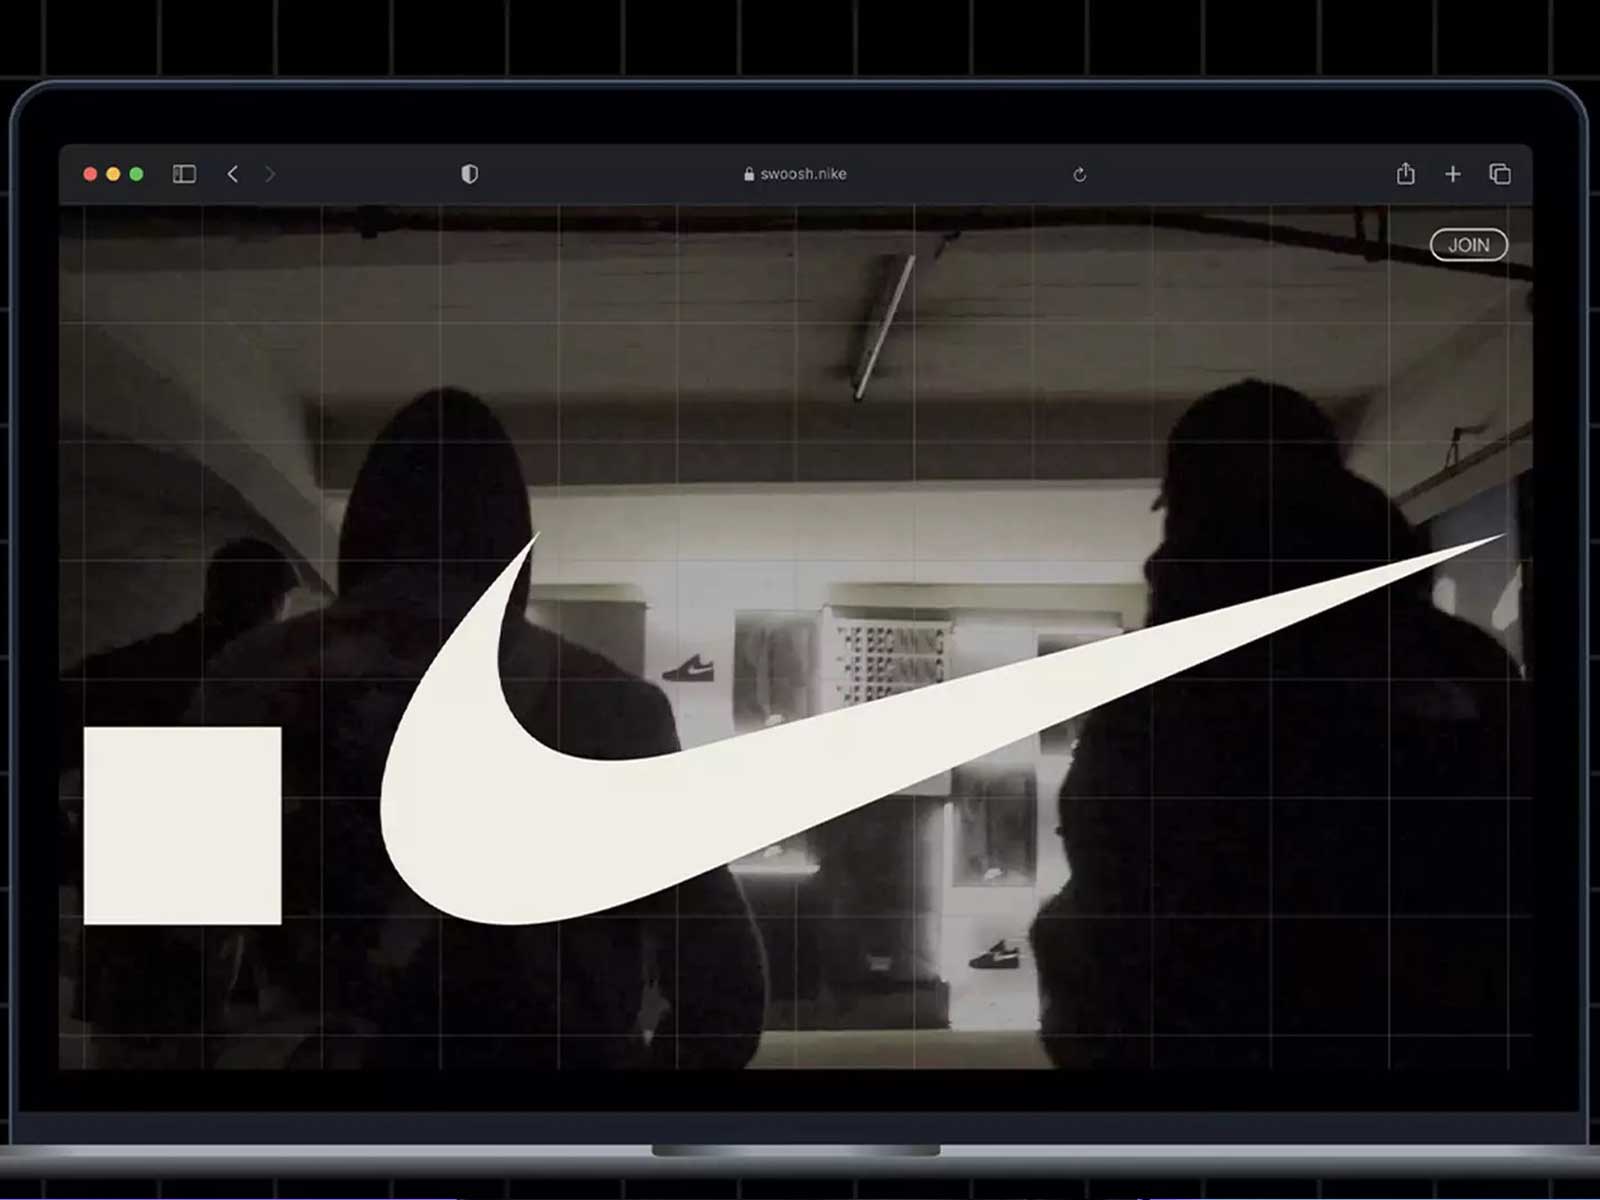 Will Nike’s .SWOOSH revolutionize the future of Web 3.0?